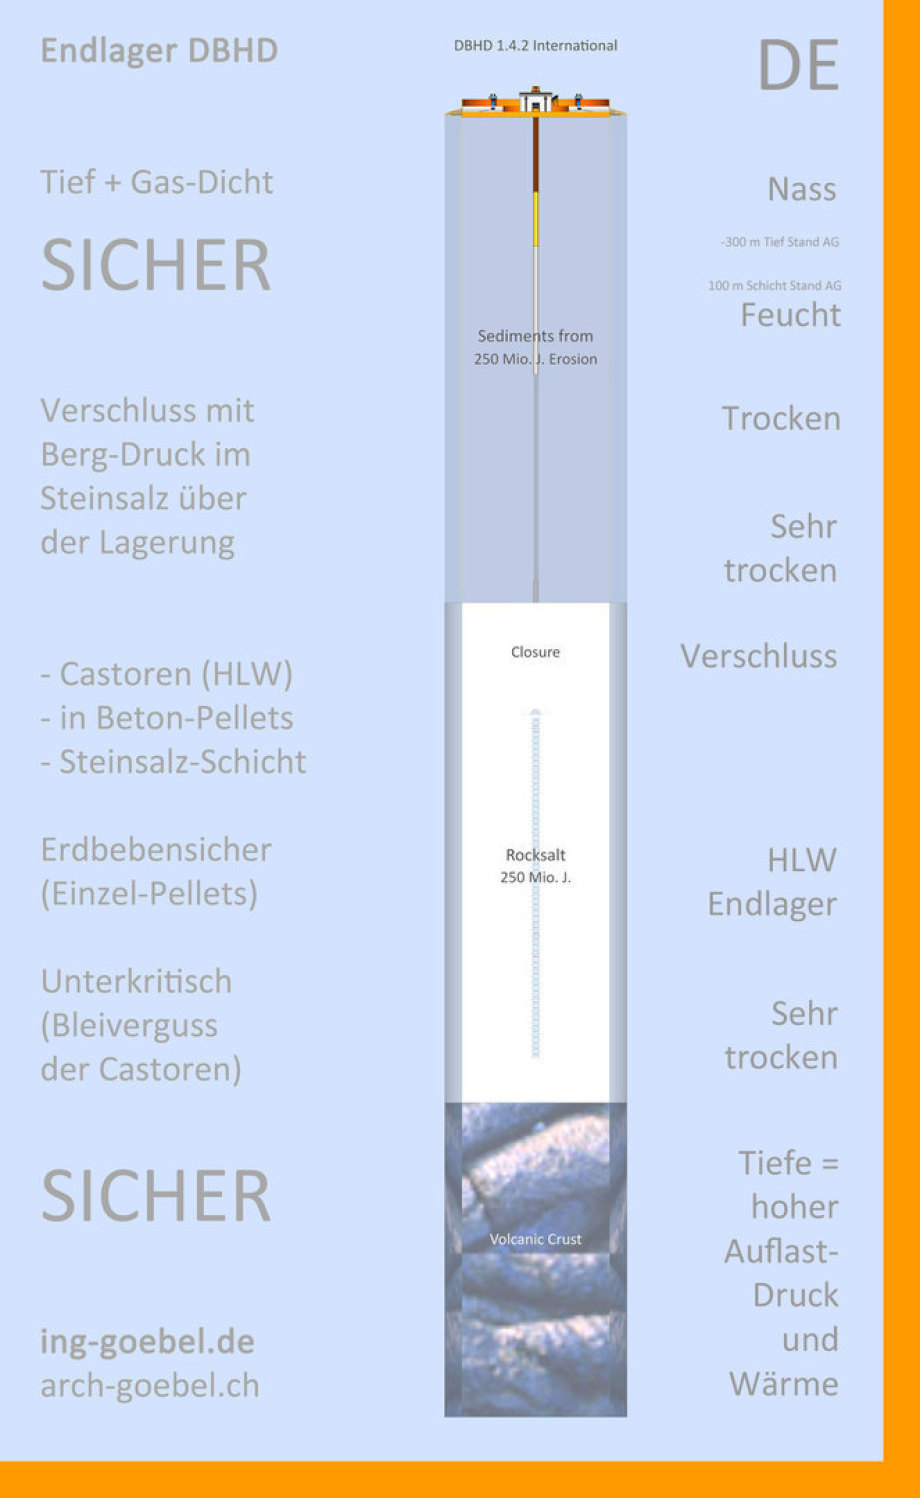 DBHD Endlager - Steinsalz SCHICHT - Stand AG mit eingezeichnet (massstäblich)